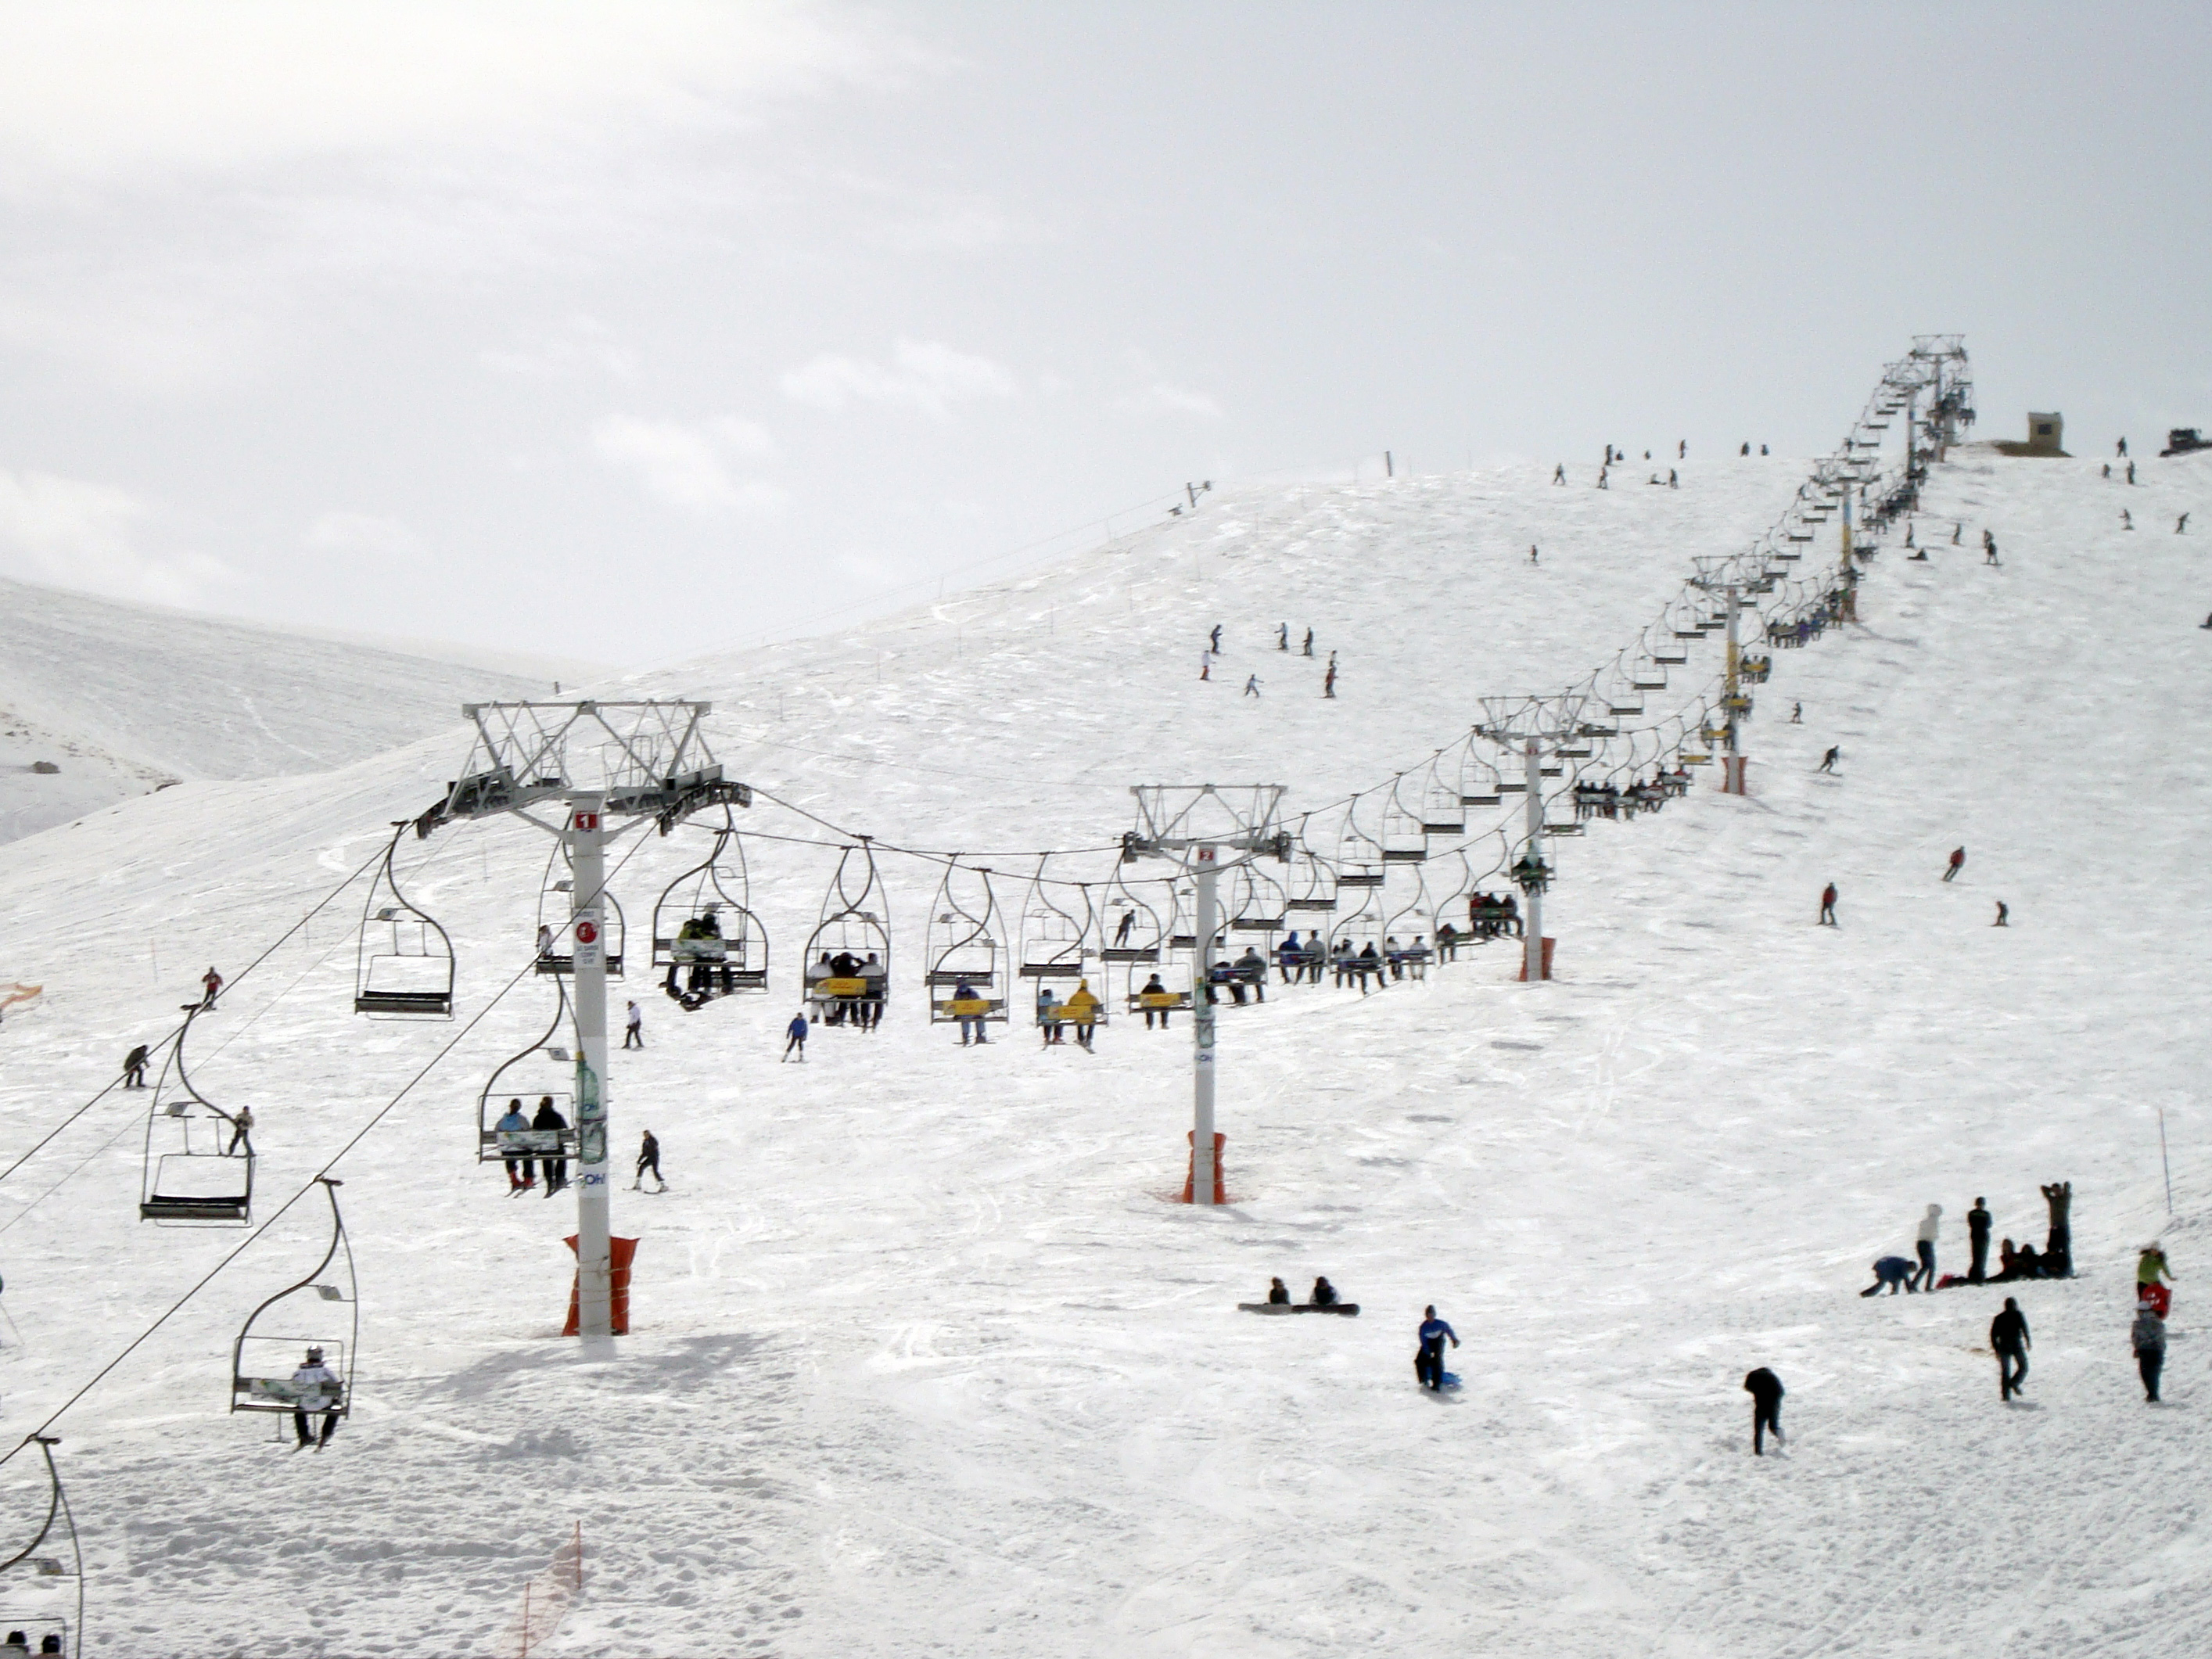 Ski Lifts, Mzaar Ski Resort